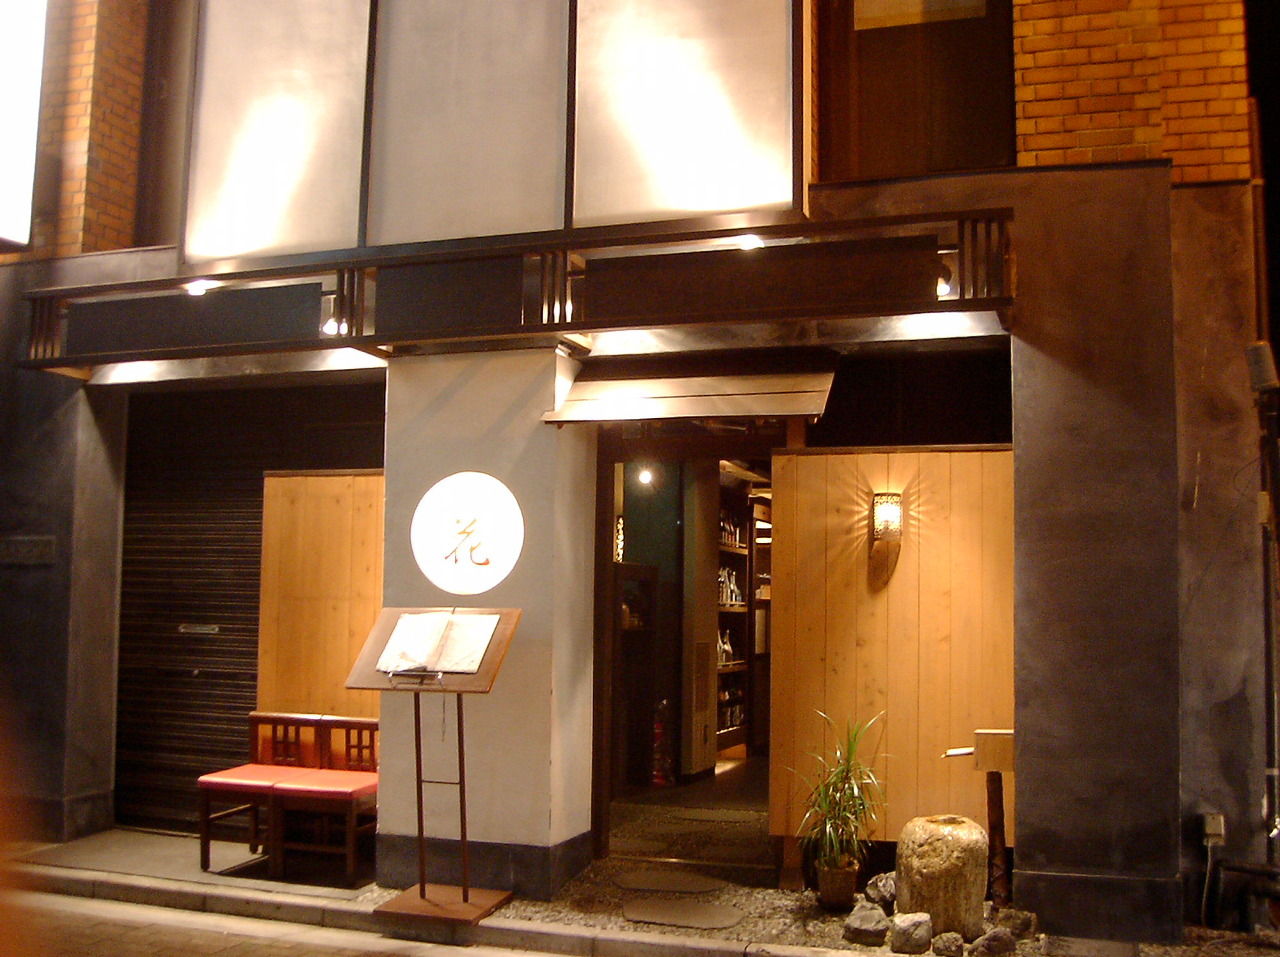 新宿 グルメ 特別な日 食事会は京風和食 小料理 花 で決まり フジアキ雑貨店